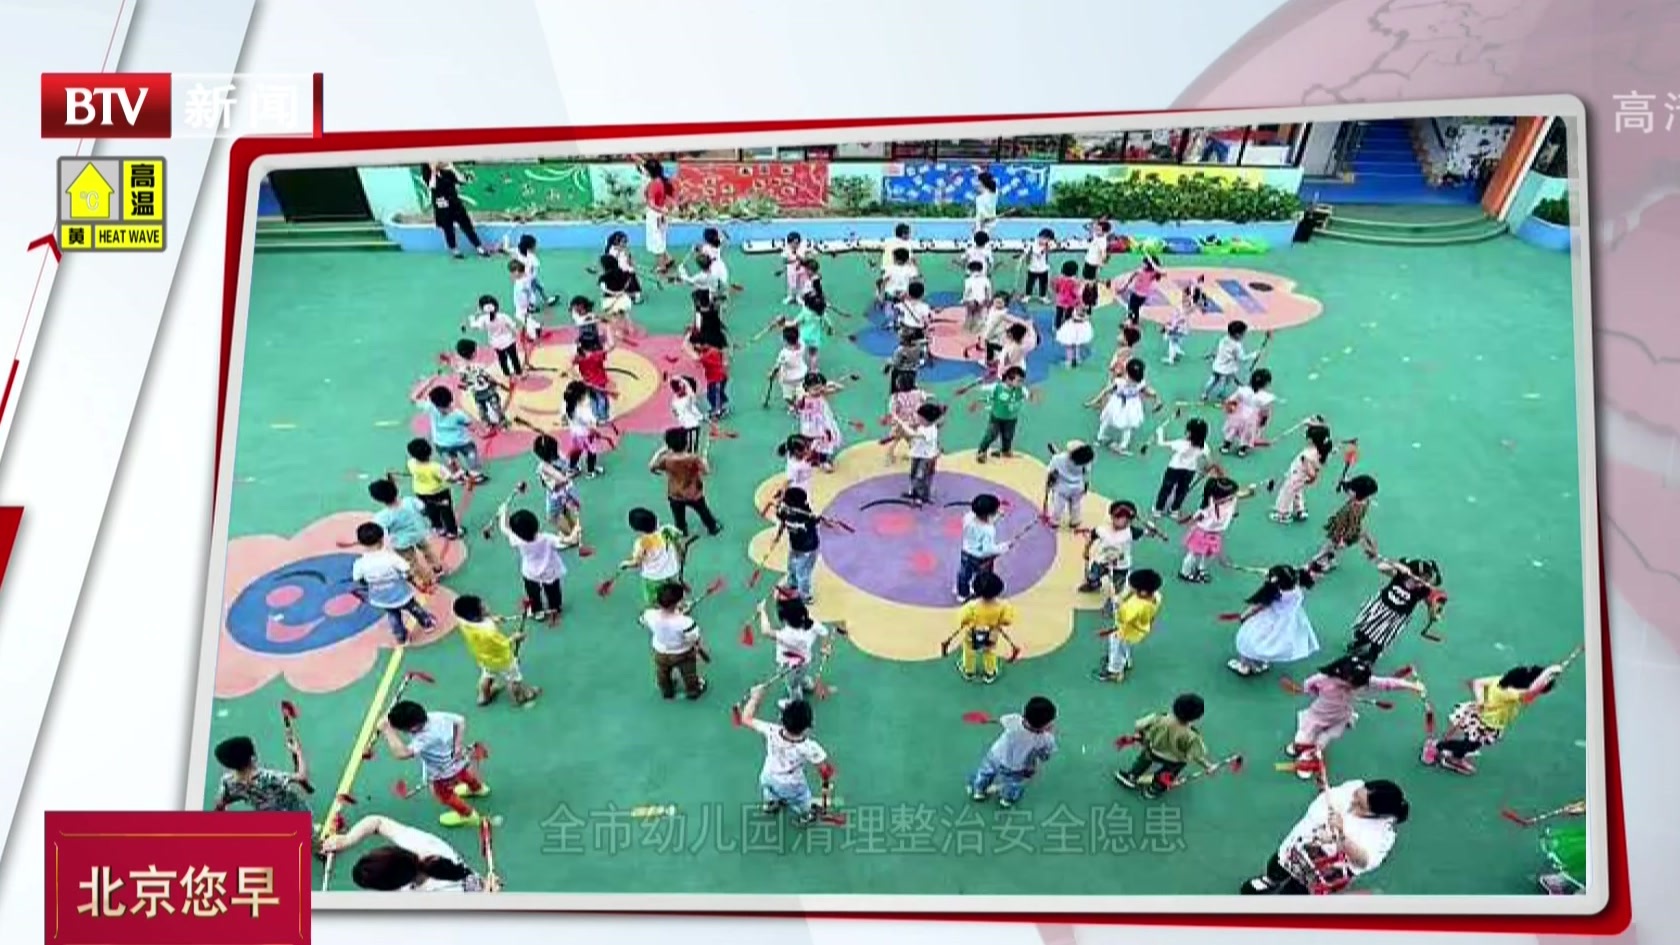 全市幼儿园清理整治安全隐患